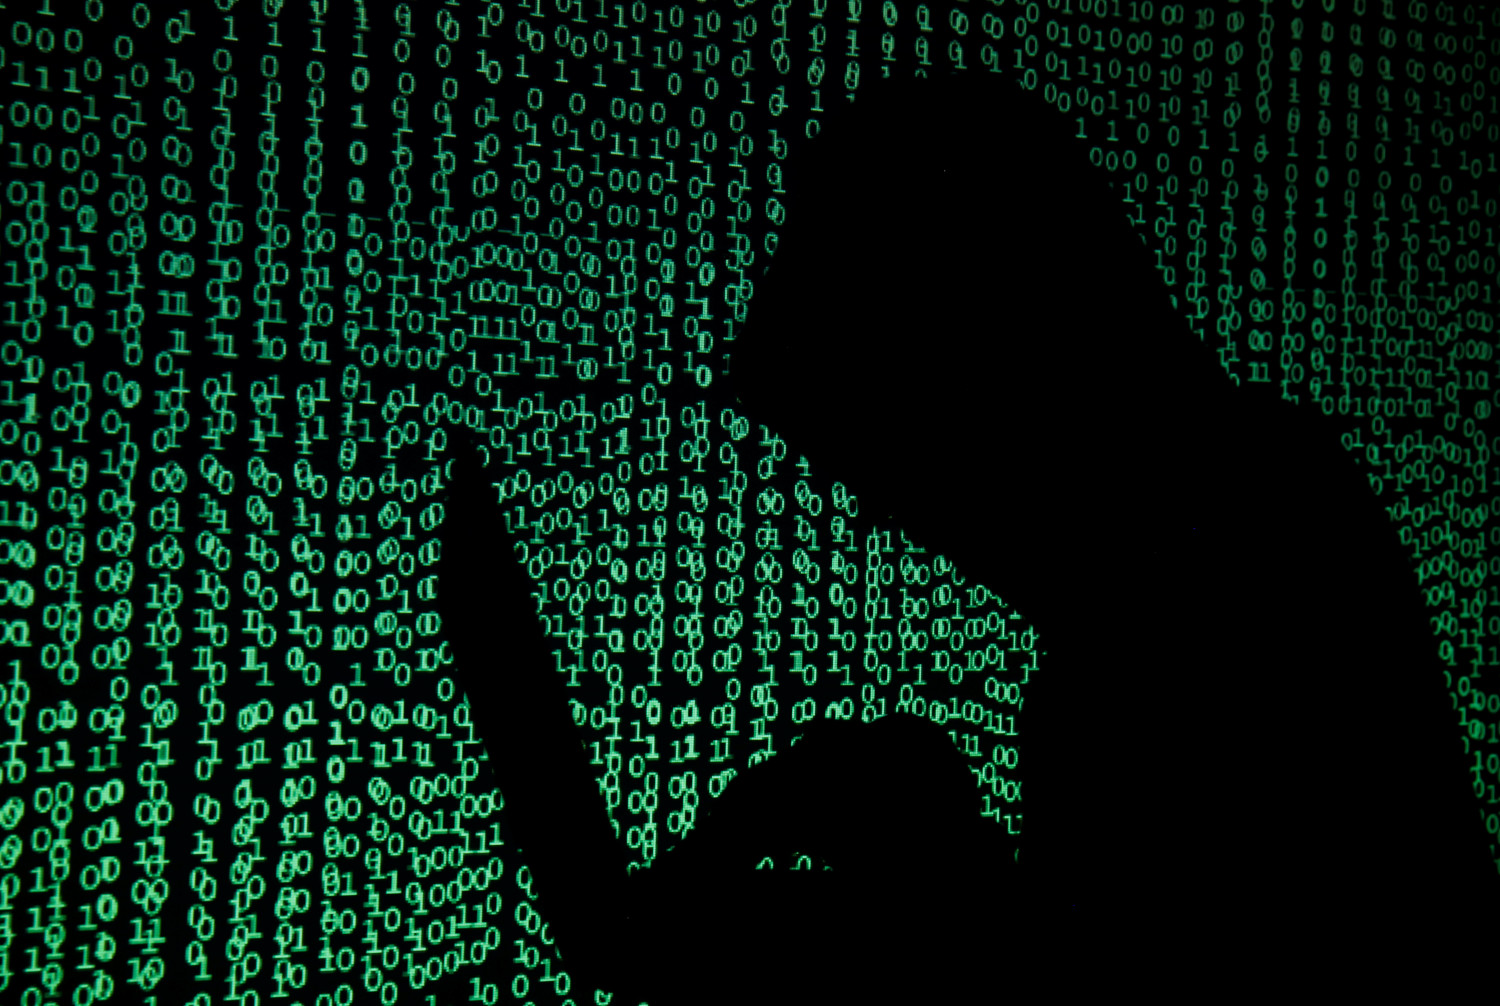 dix hackers arretes pour le vol de 100 millions de dollars en cryptomonnaies 